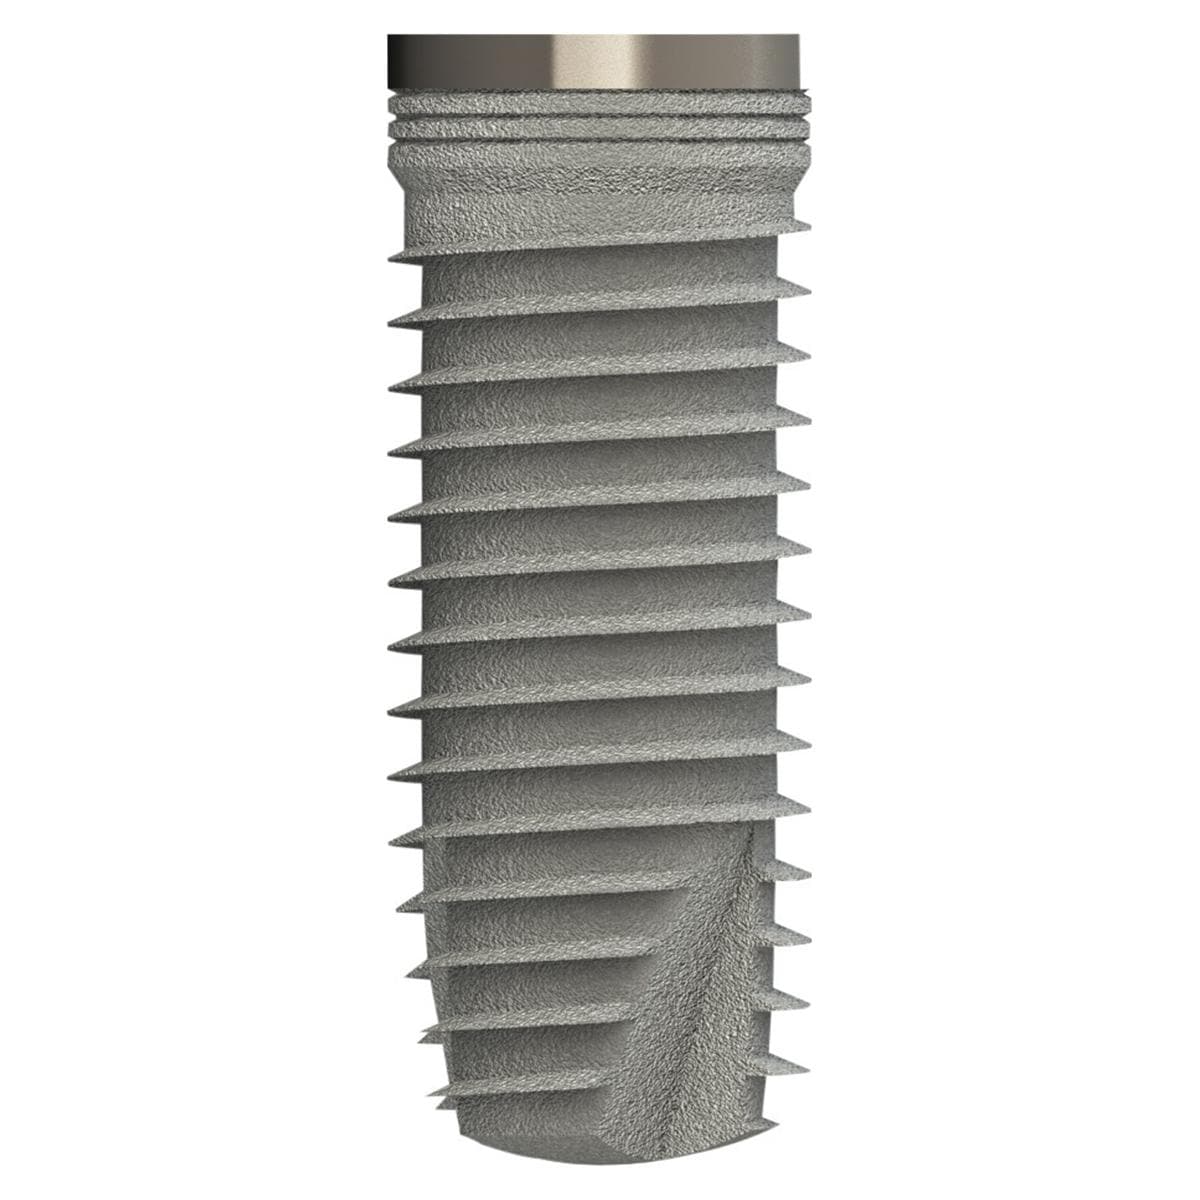 TL Implantat BONITex® P Ø 5,0 mm - Länge 14 mm